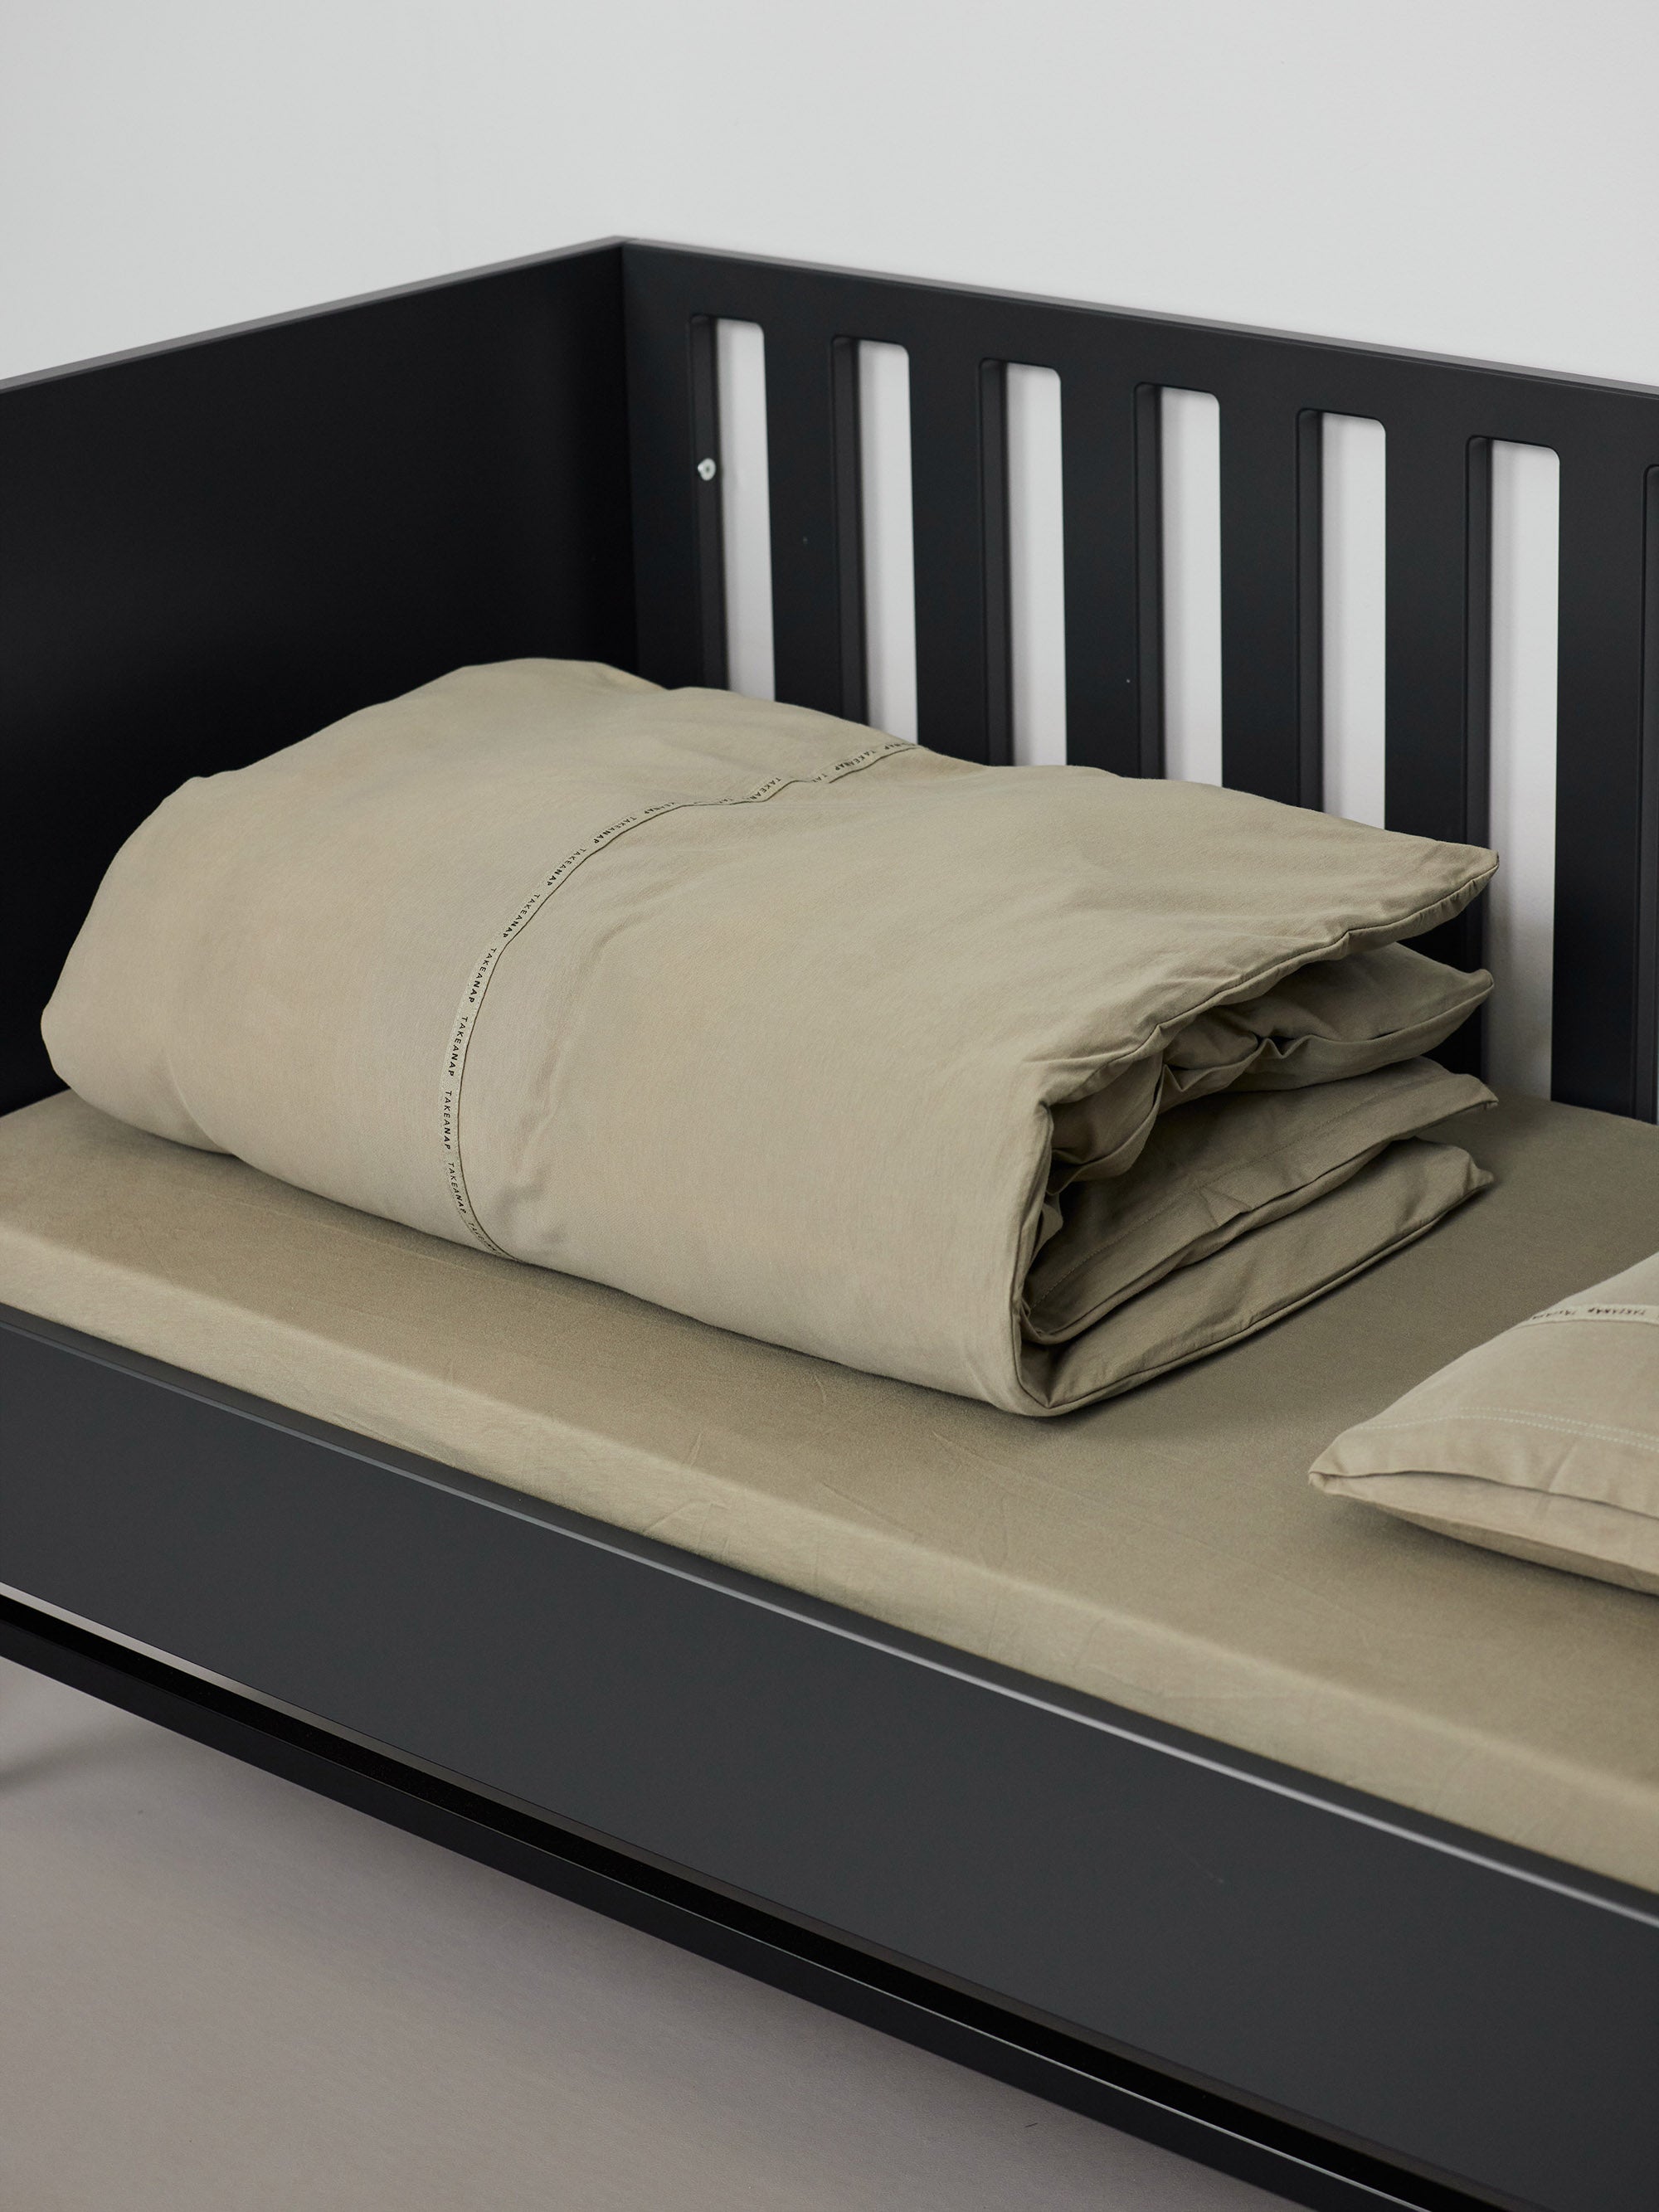 שמיכה מקופלת, סדין וכרית בתוך מיטת תינוק שחורה בצבע ירוק זית